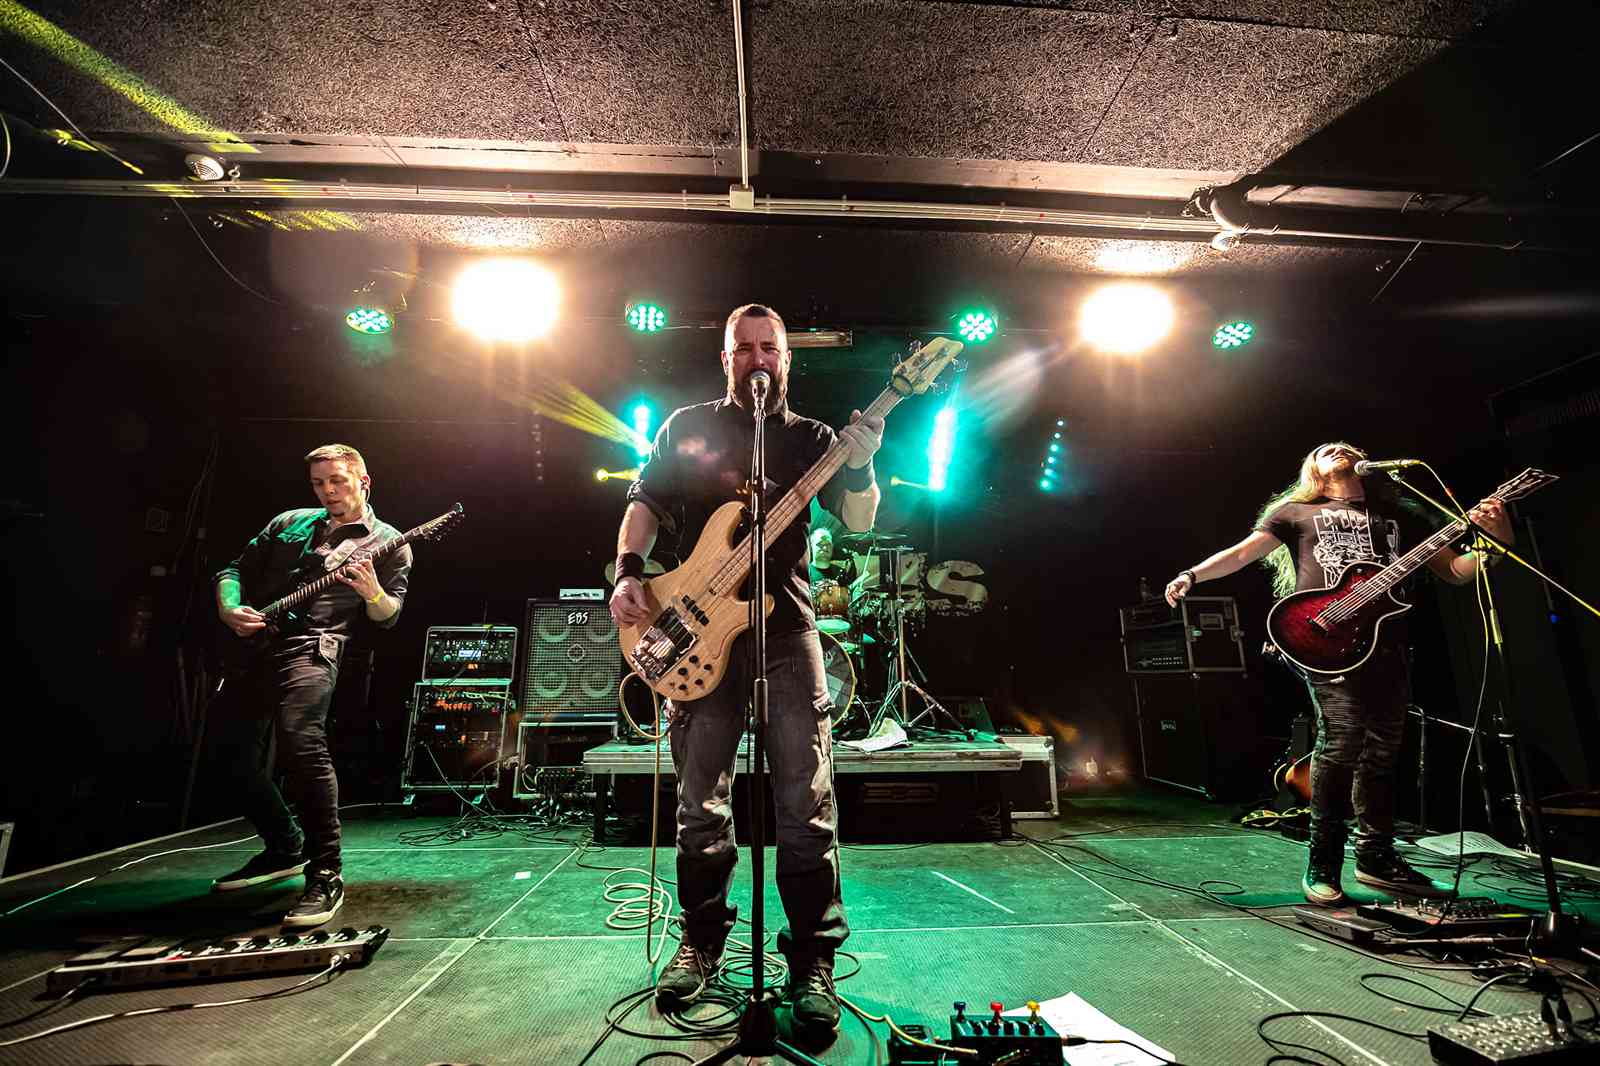 Salvus - 'Szabad szemmel' címmel megjelent a fővárosi modern/groove metalos zenekar új albuma!